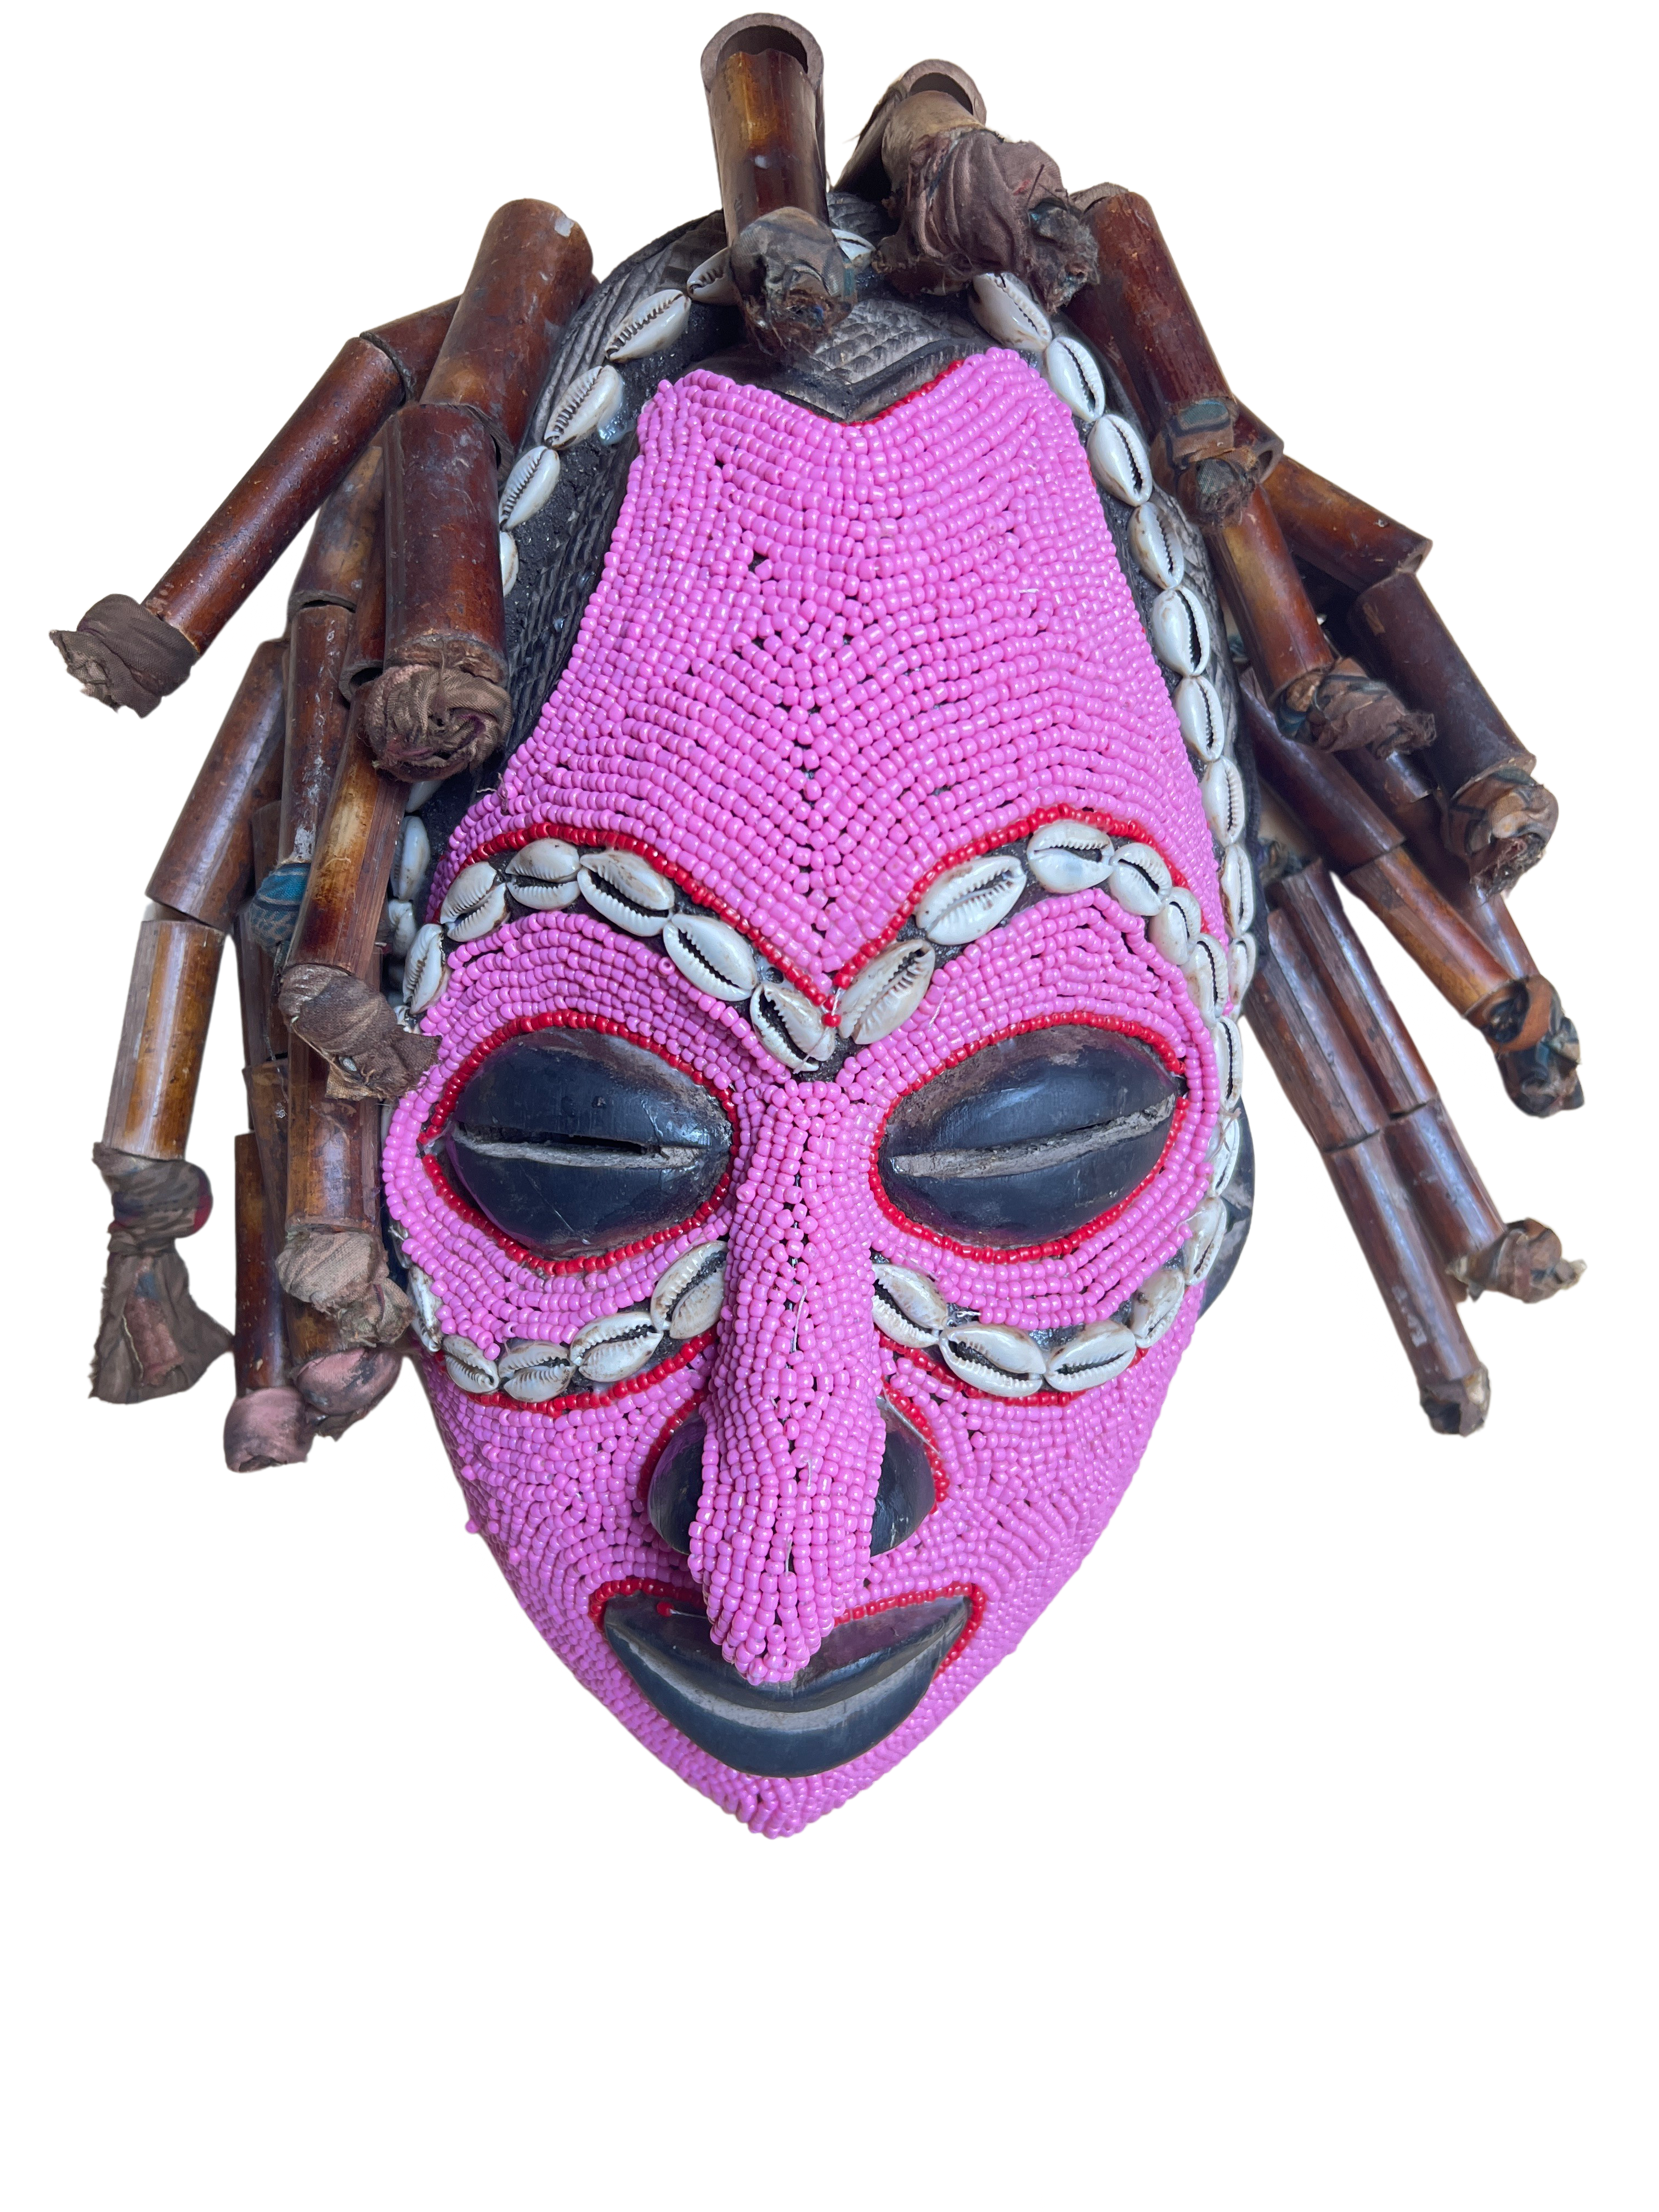 Chokwe Beaded Mask - Chokwe